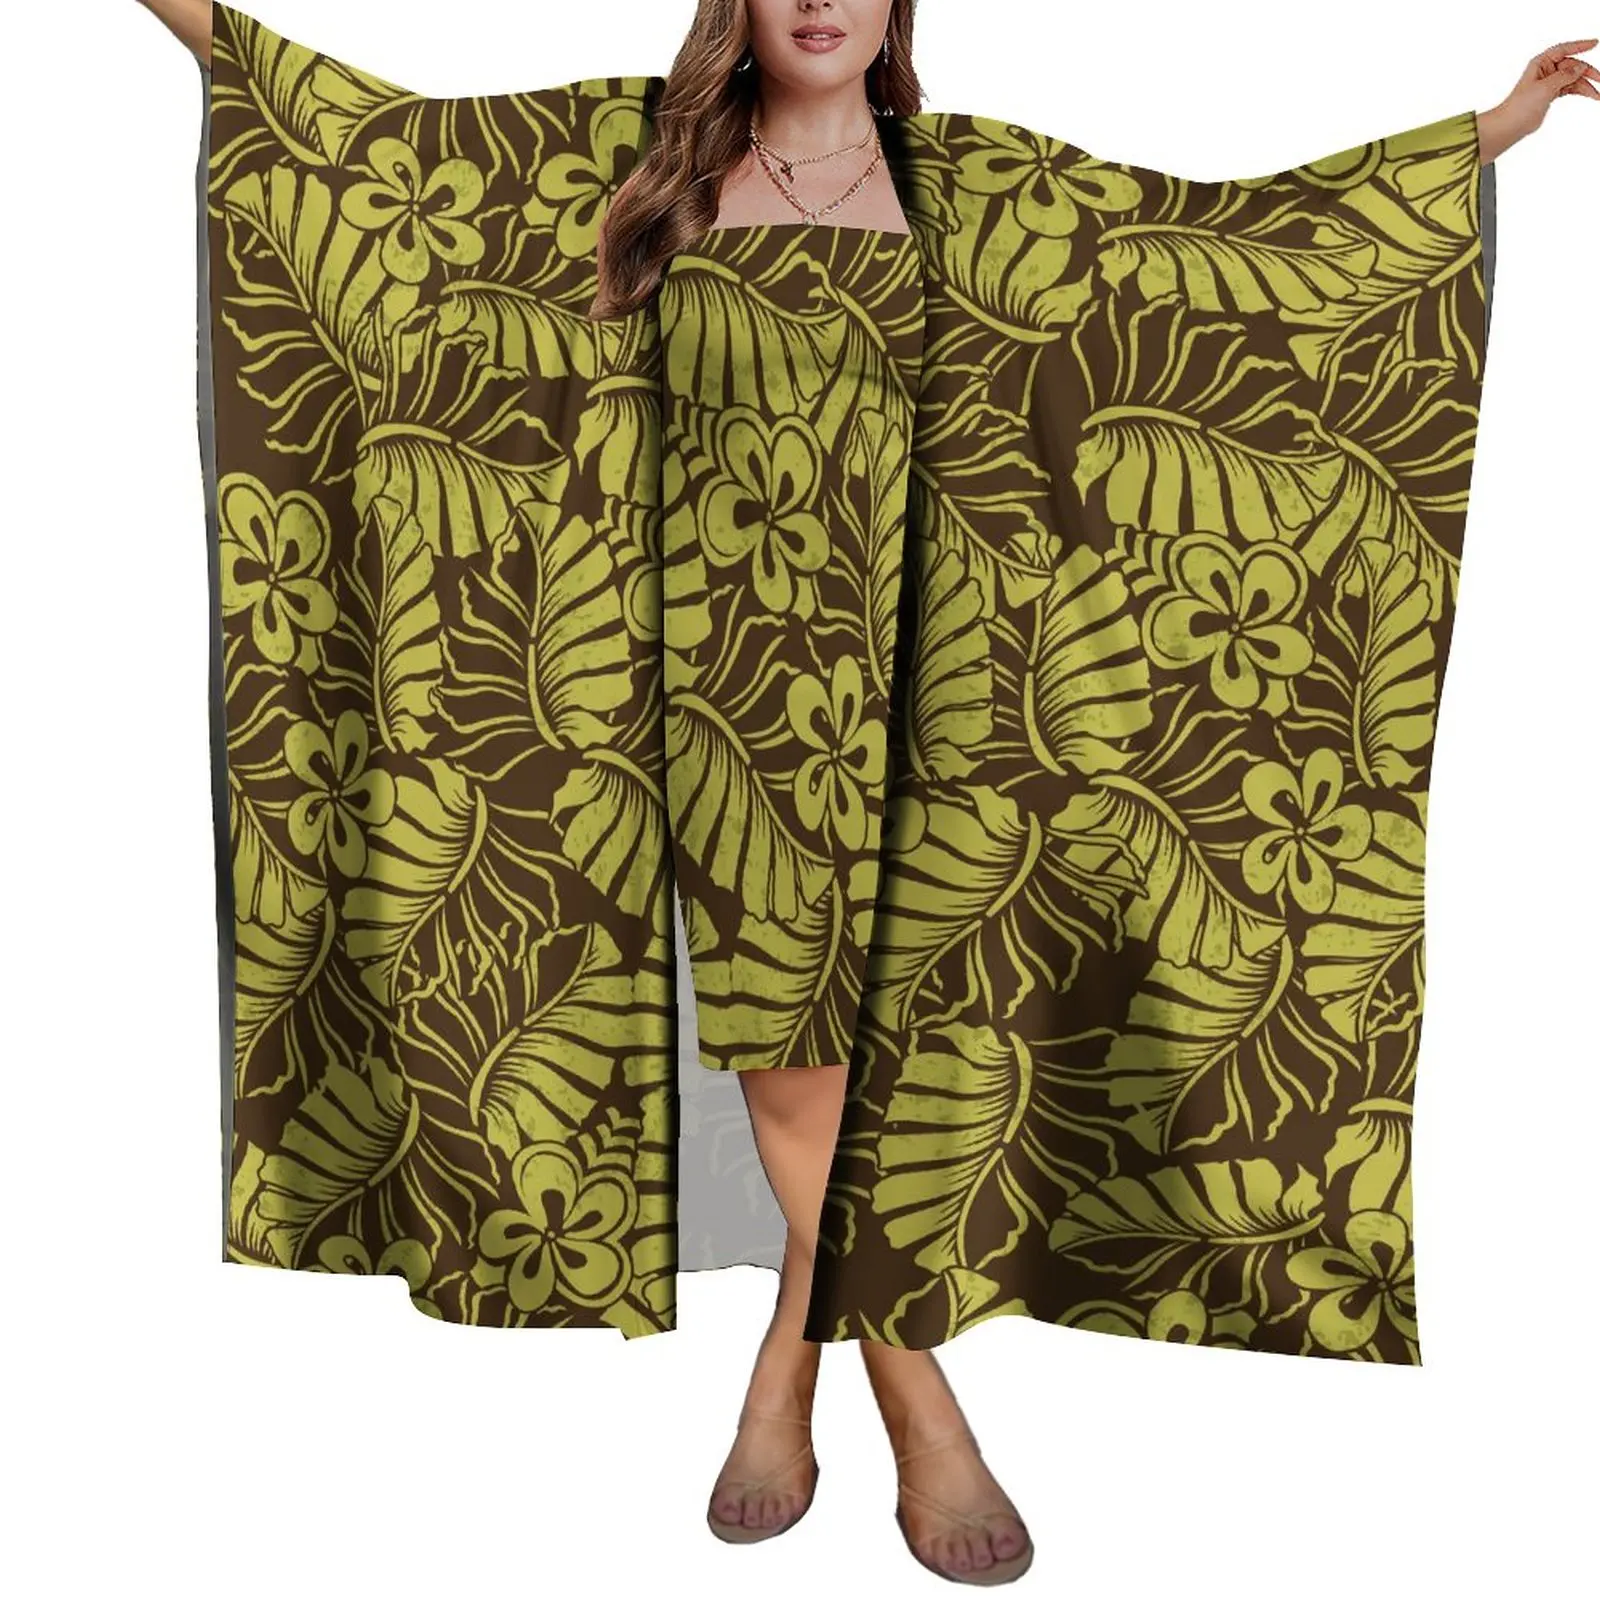 1 MOQ Индивидуальный Дизайн HD Печать Полинезийский Племенной Женский Пляжный Солнцезащитный Крем Шаль Пляжный Саронг Шарф Леди Легкий Комплект Платья Саронг 1